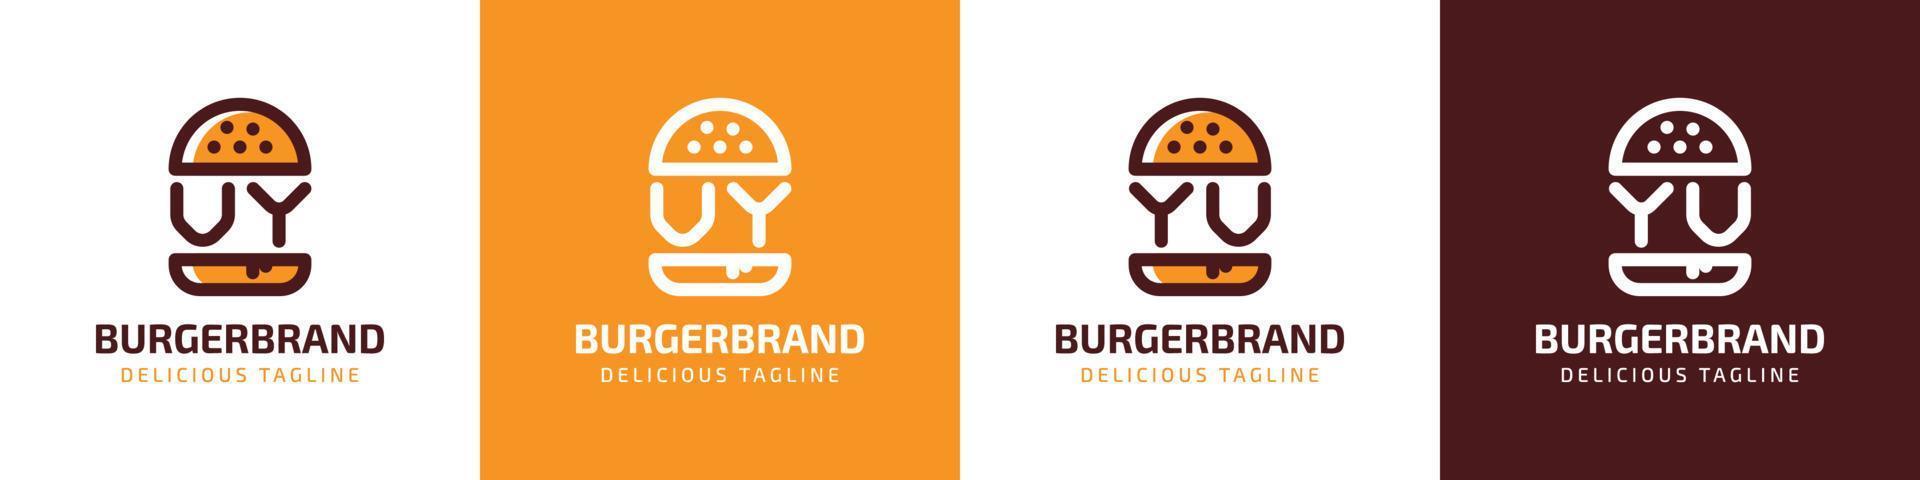 brev vy och yv burger logotyp, lämplig för några företag relaterad till burger med vy eller yv initialer. vektor